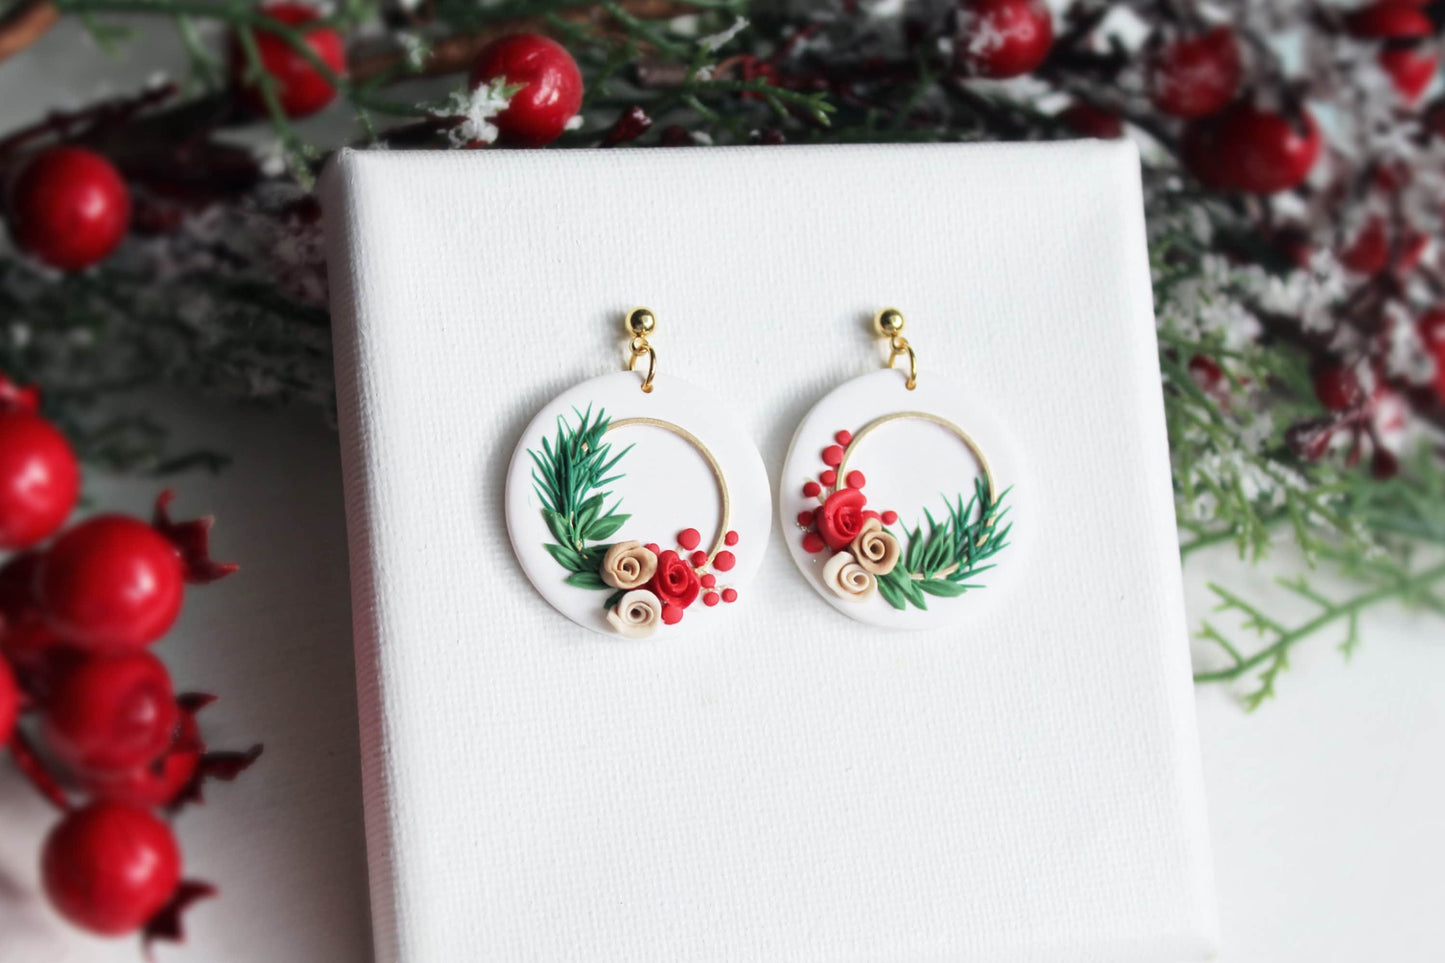 Winter Earrings, Polymer Clay Earrings, Christmas Earrings, Statement Earrings, Wreath Earrings, Holiday Earrings, Clay Earrings, Handmade